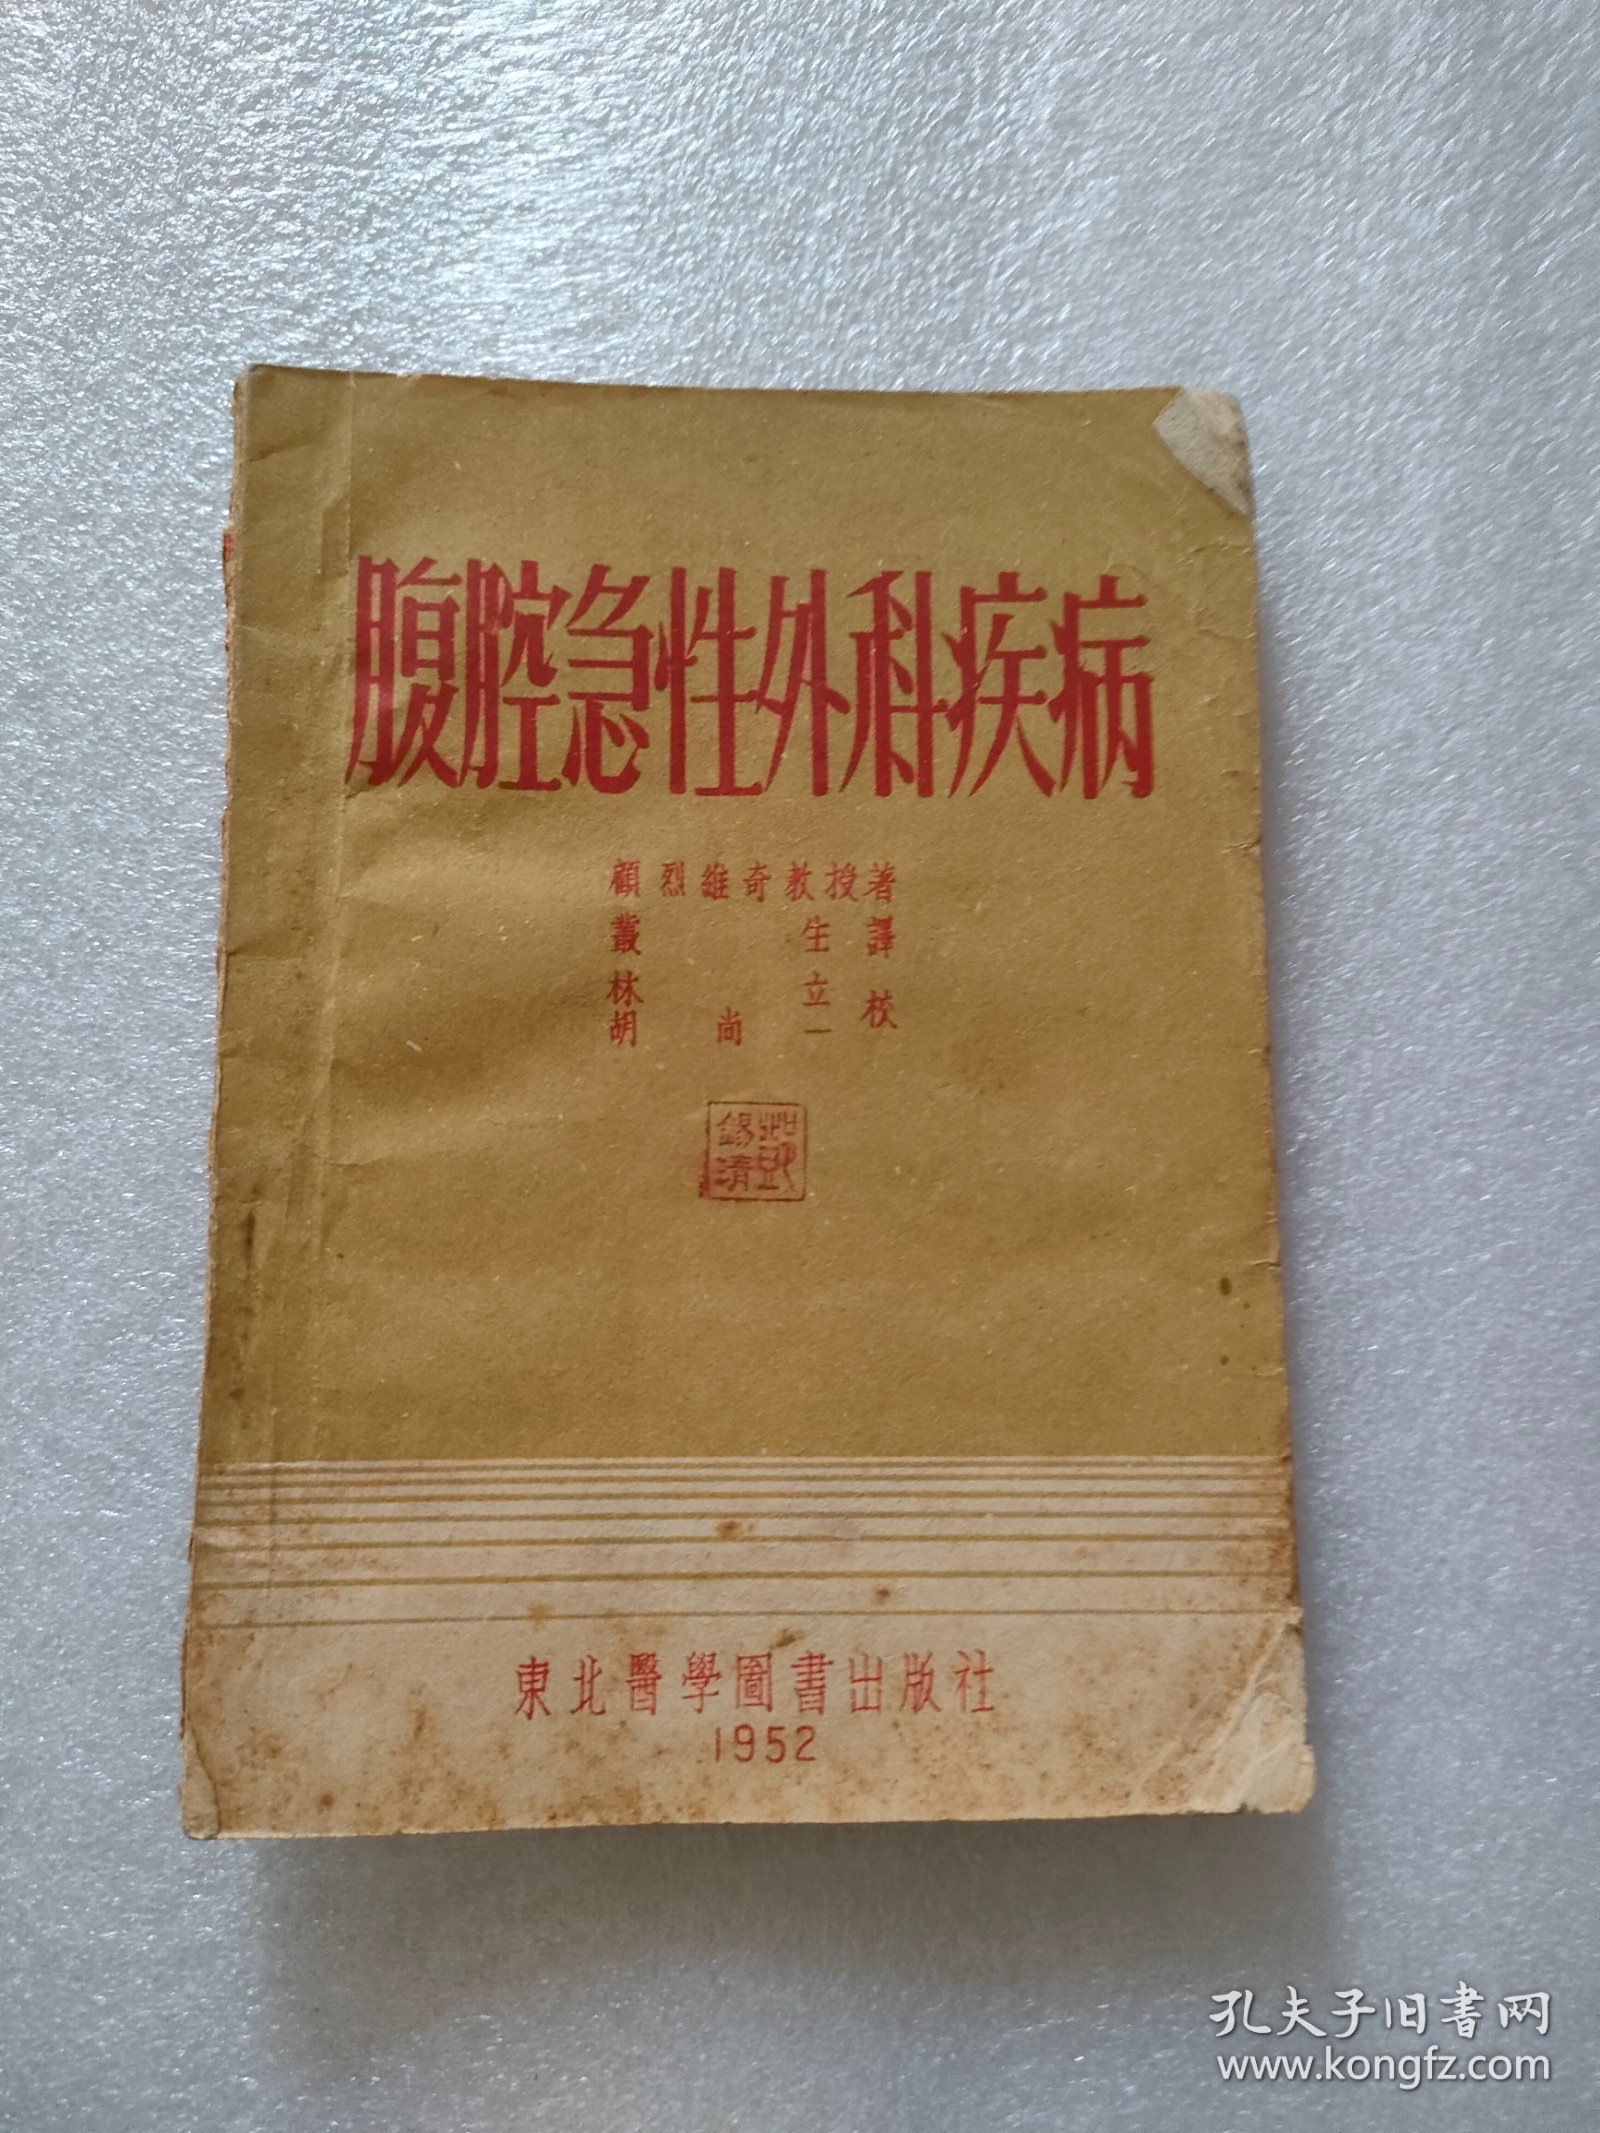 腹腔急性外科疾病，东北医学图书出版，1952年